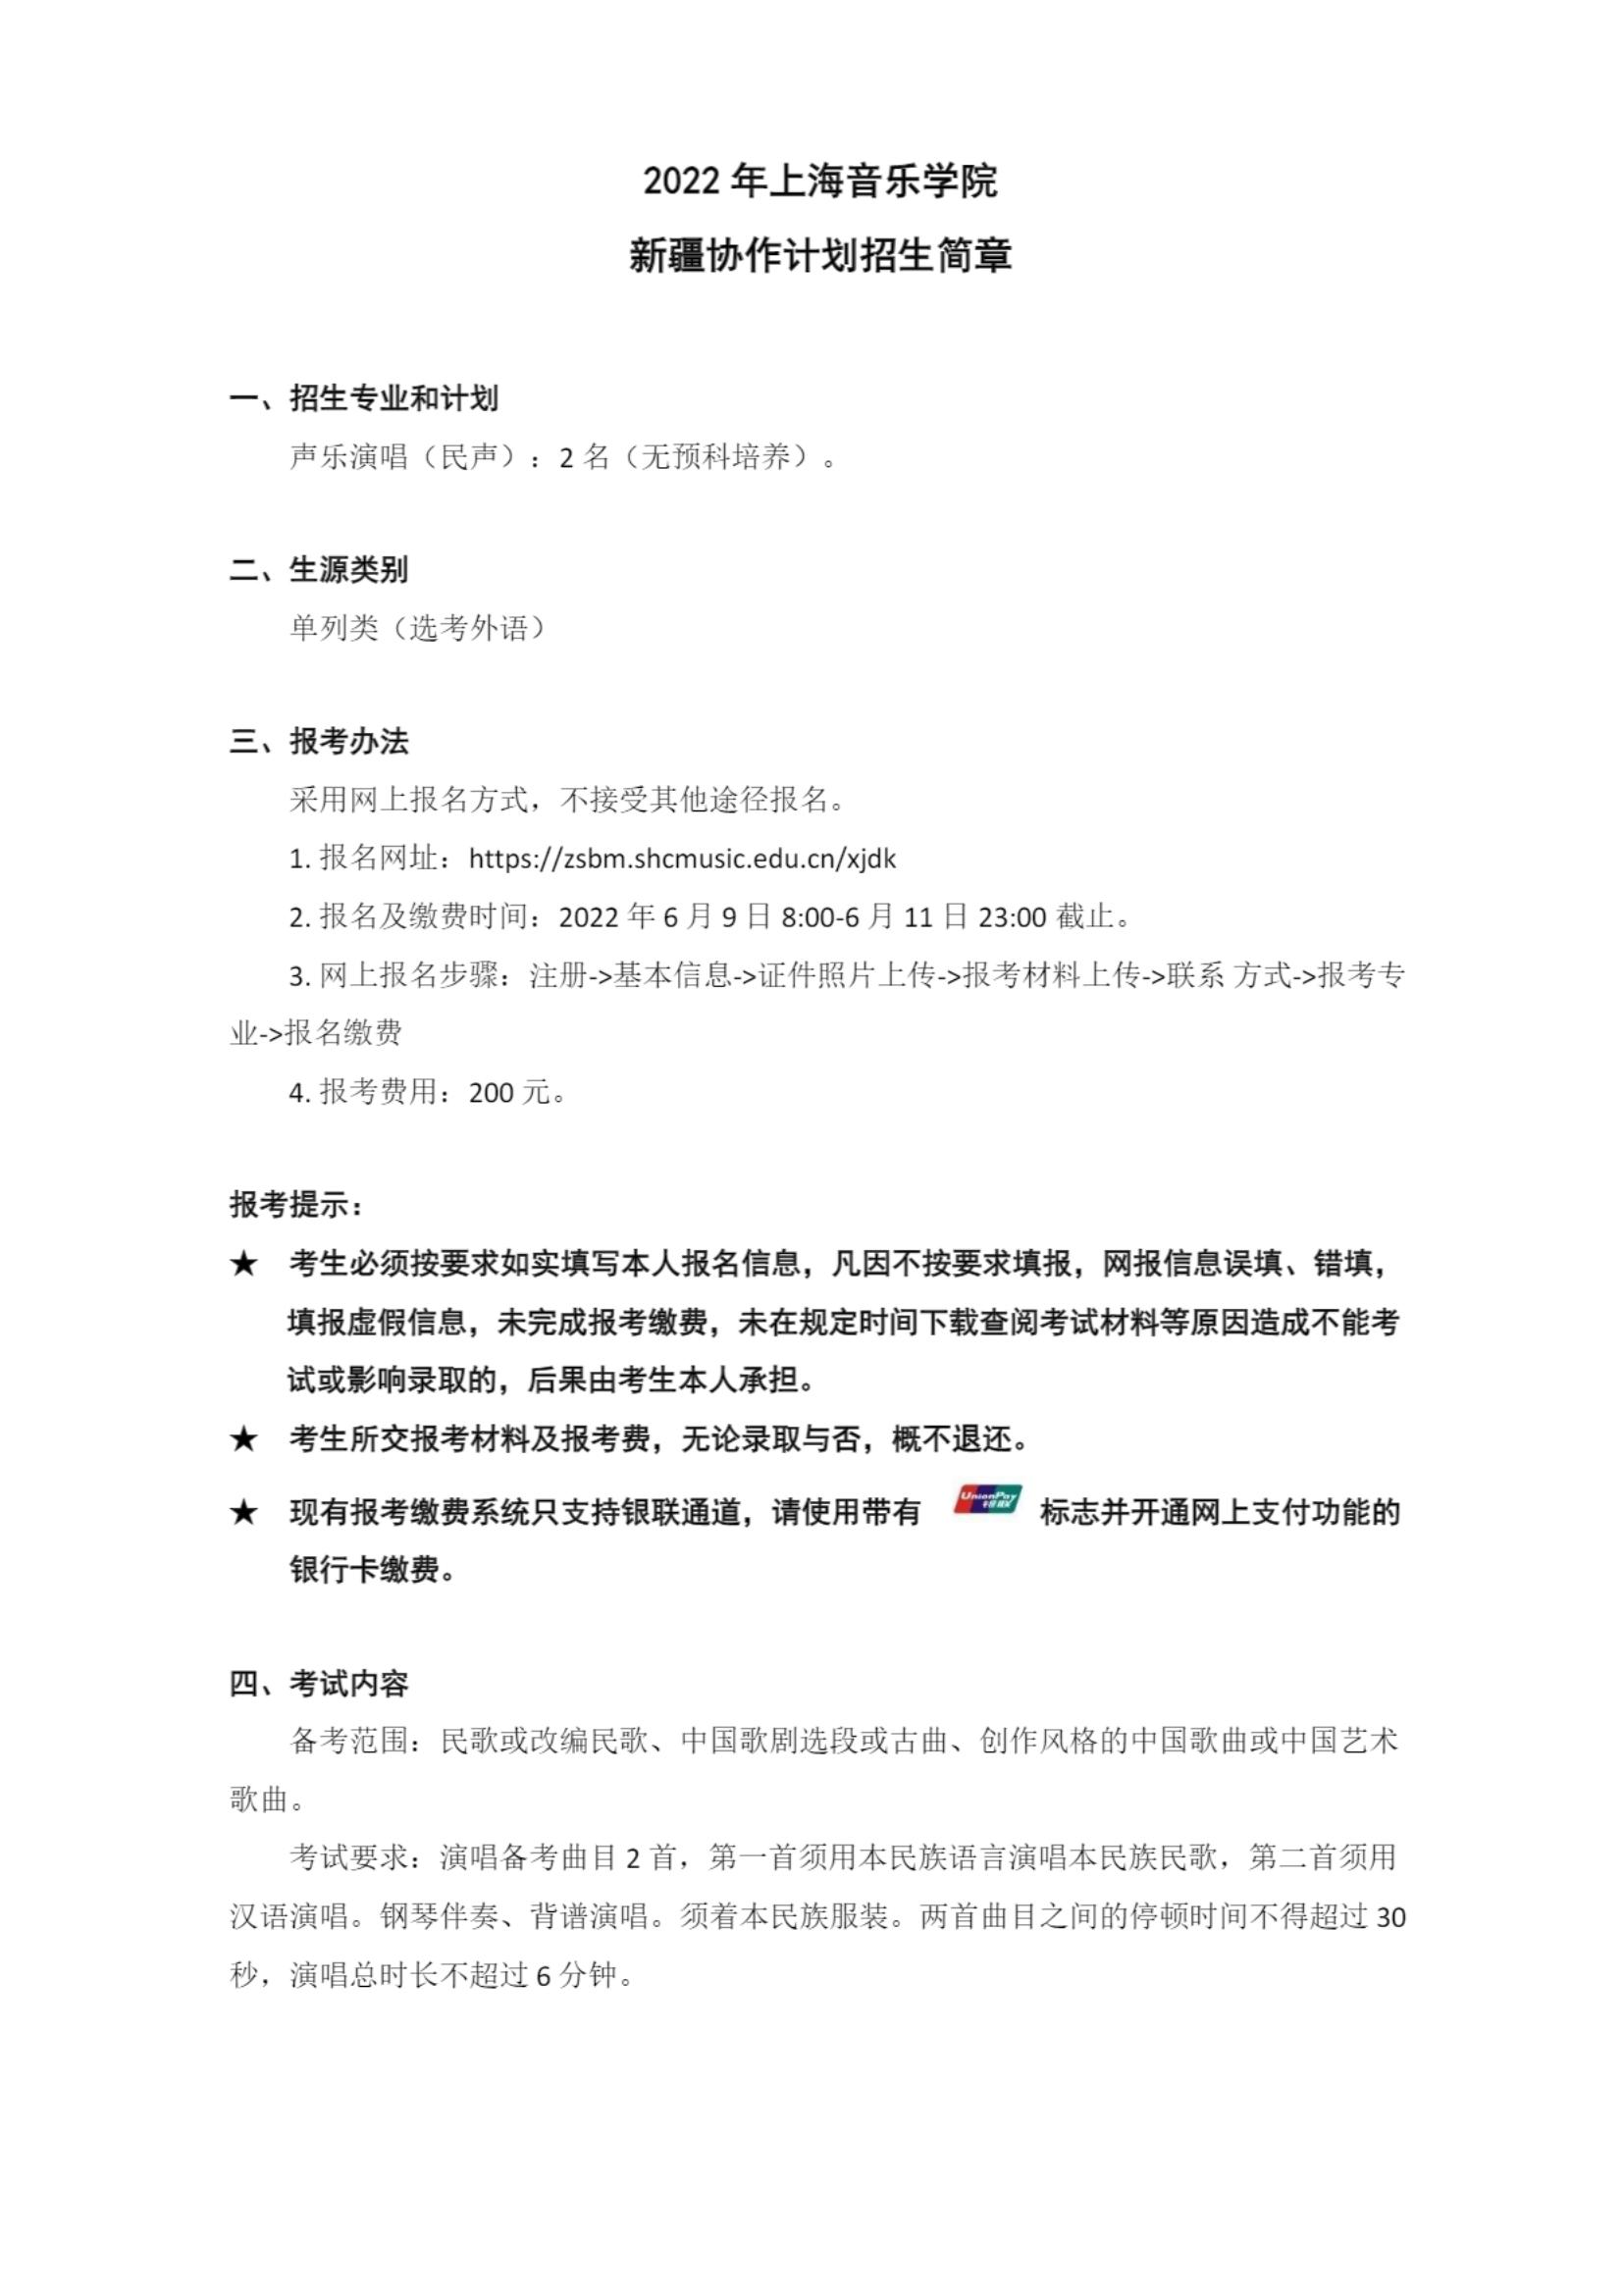 2022年上海音乐学院新疆协作计划招生简章_00.jpg